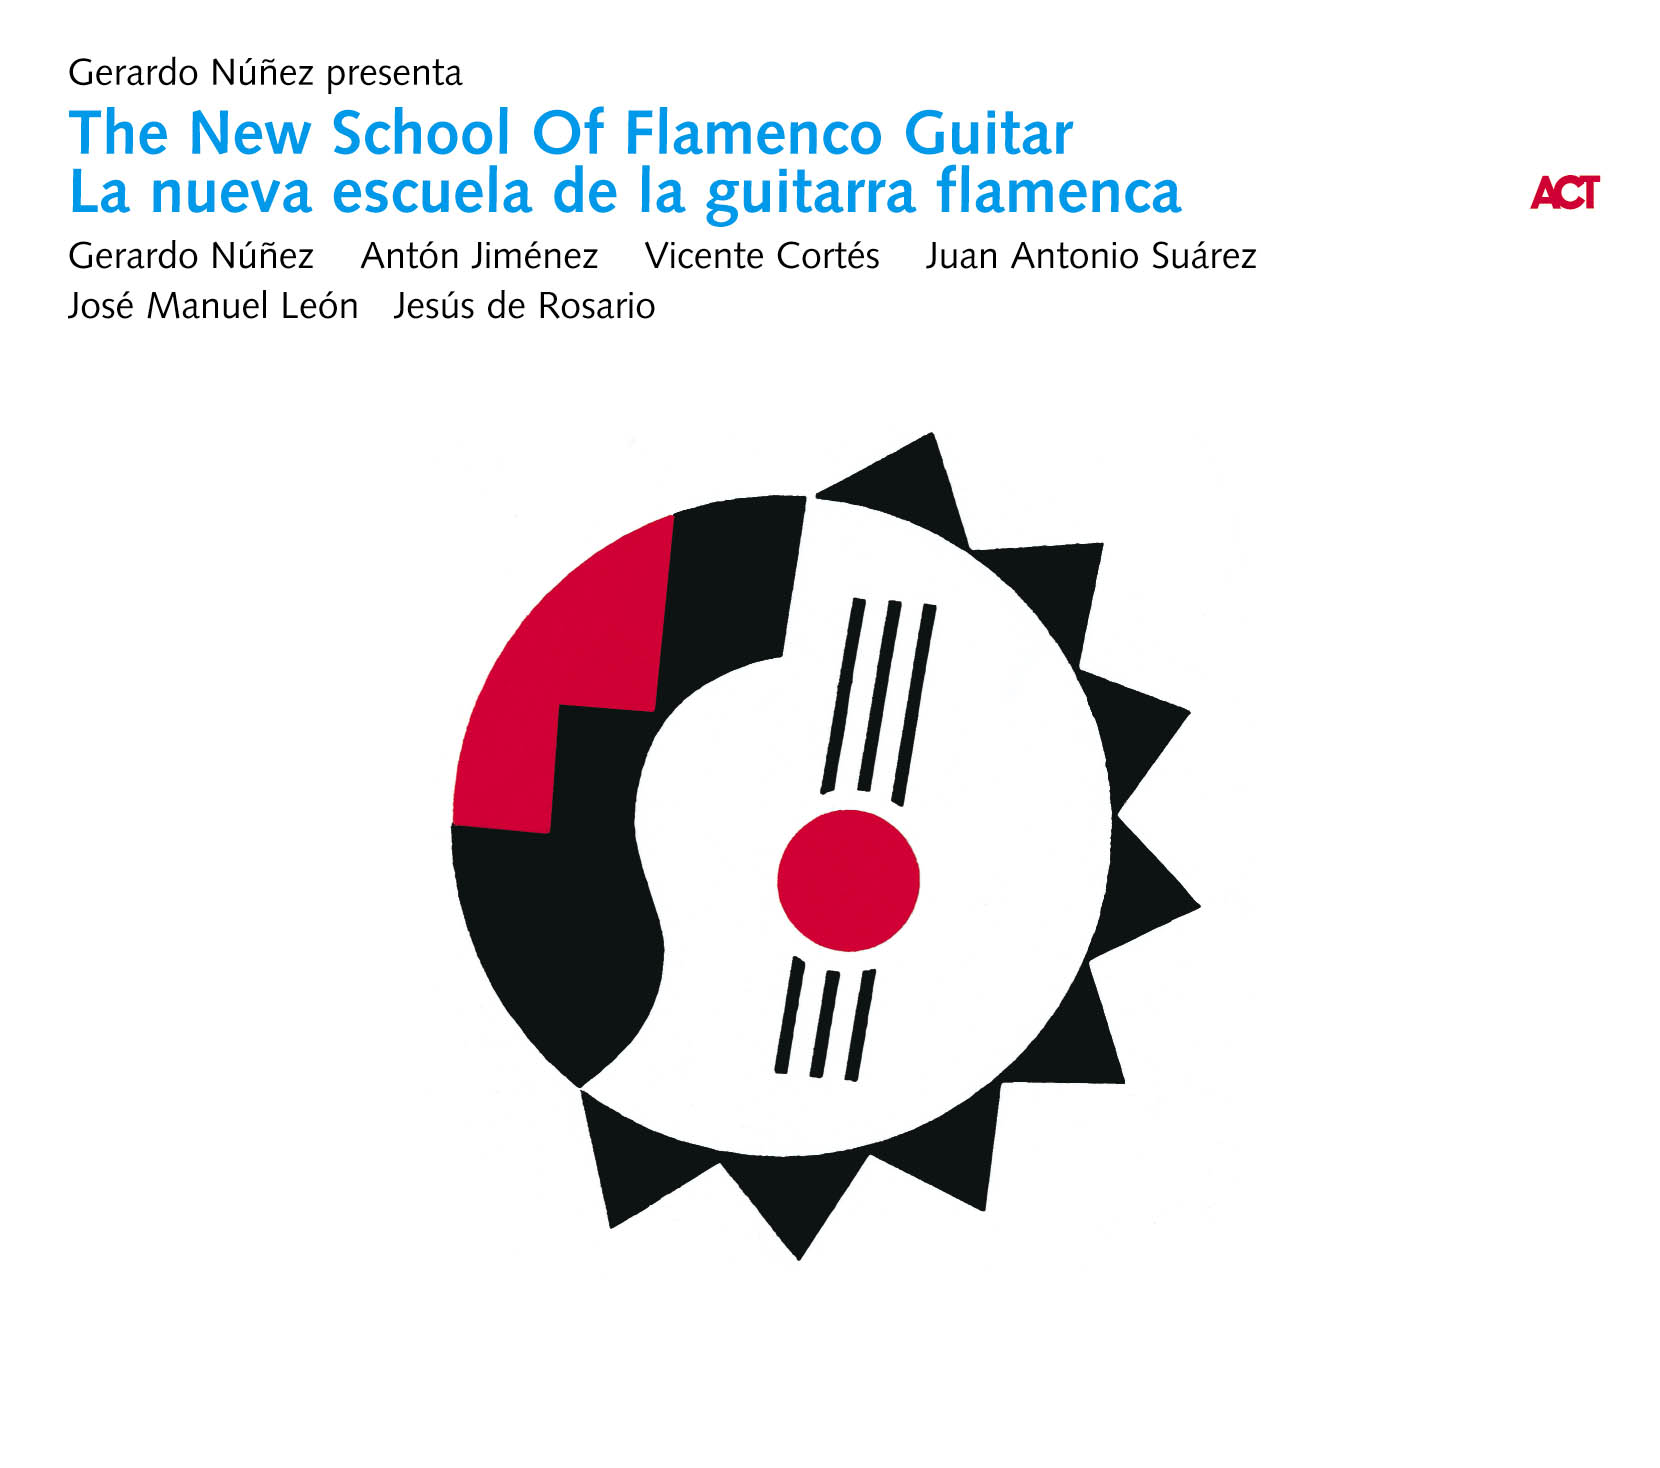 The New School Of Flamenco Guitar / La Nueva Escuela De La Guitarra Flamenca